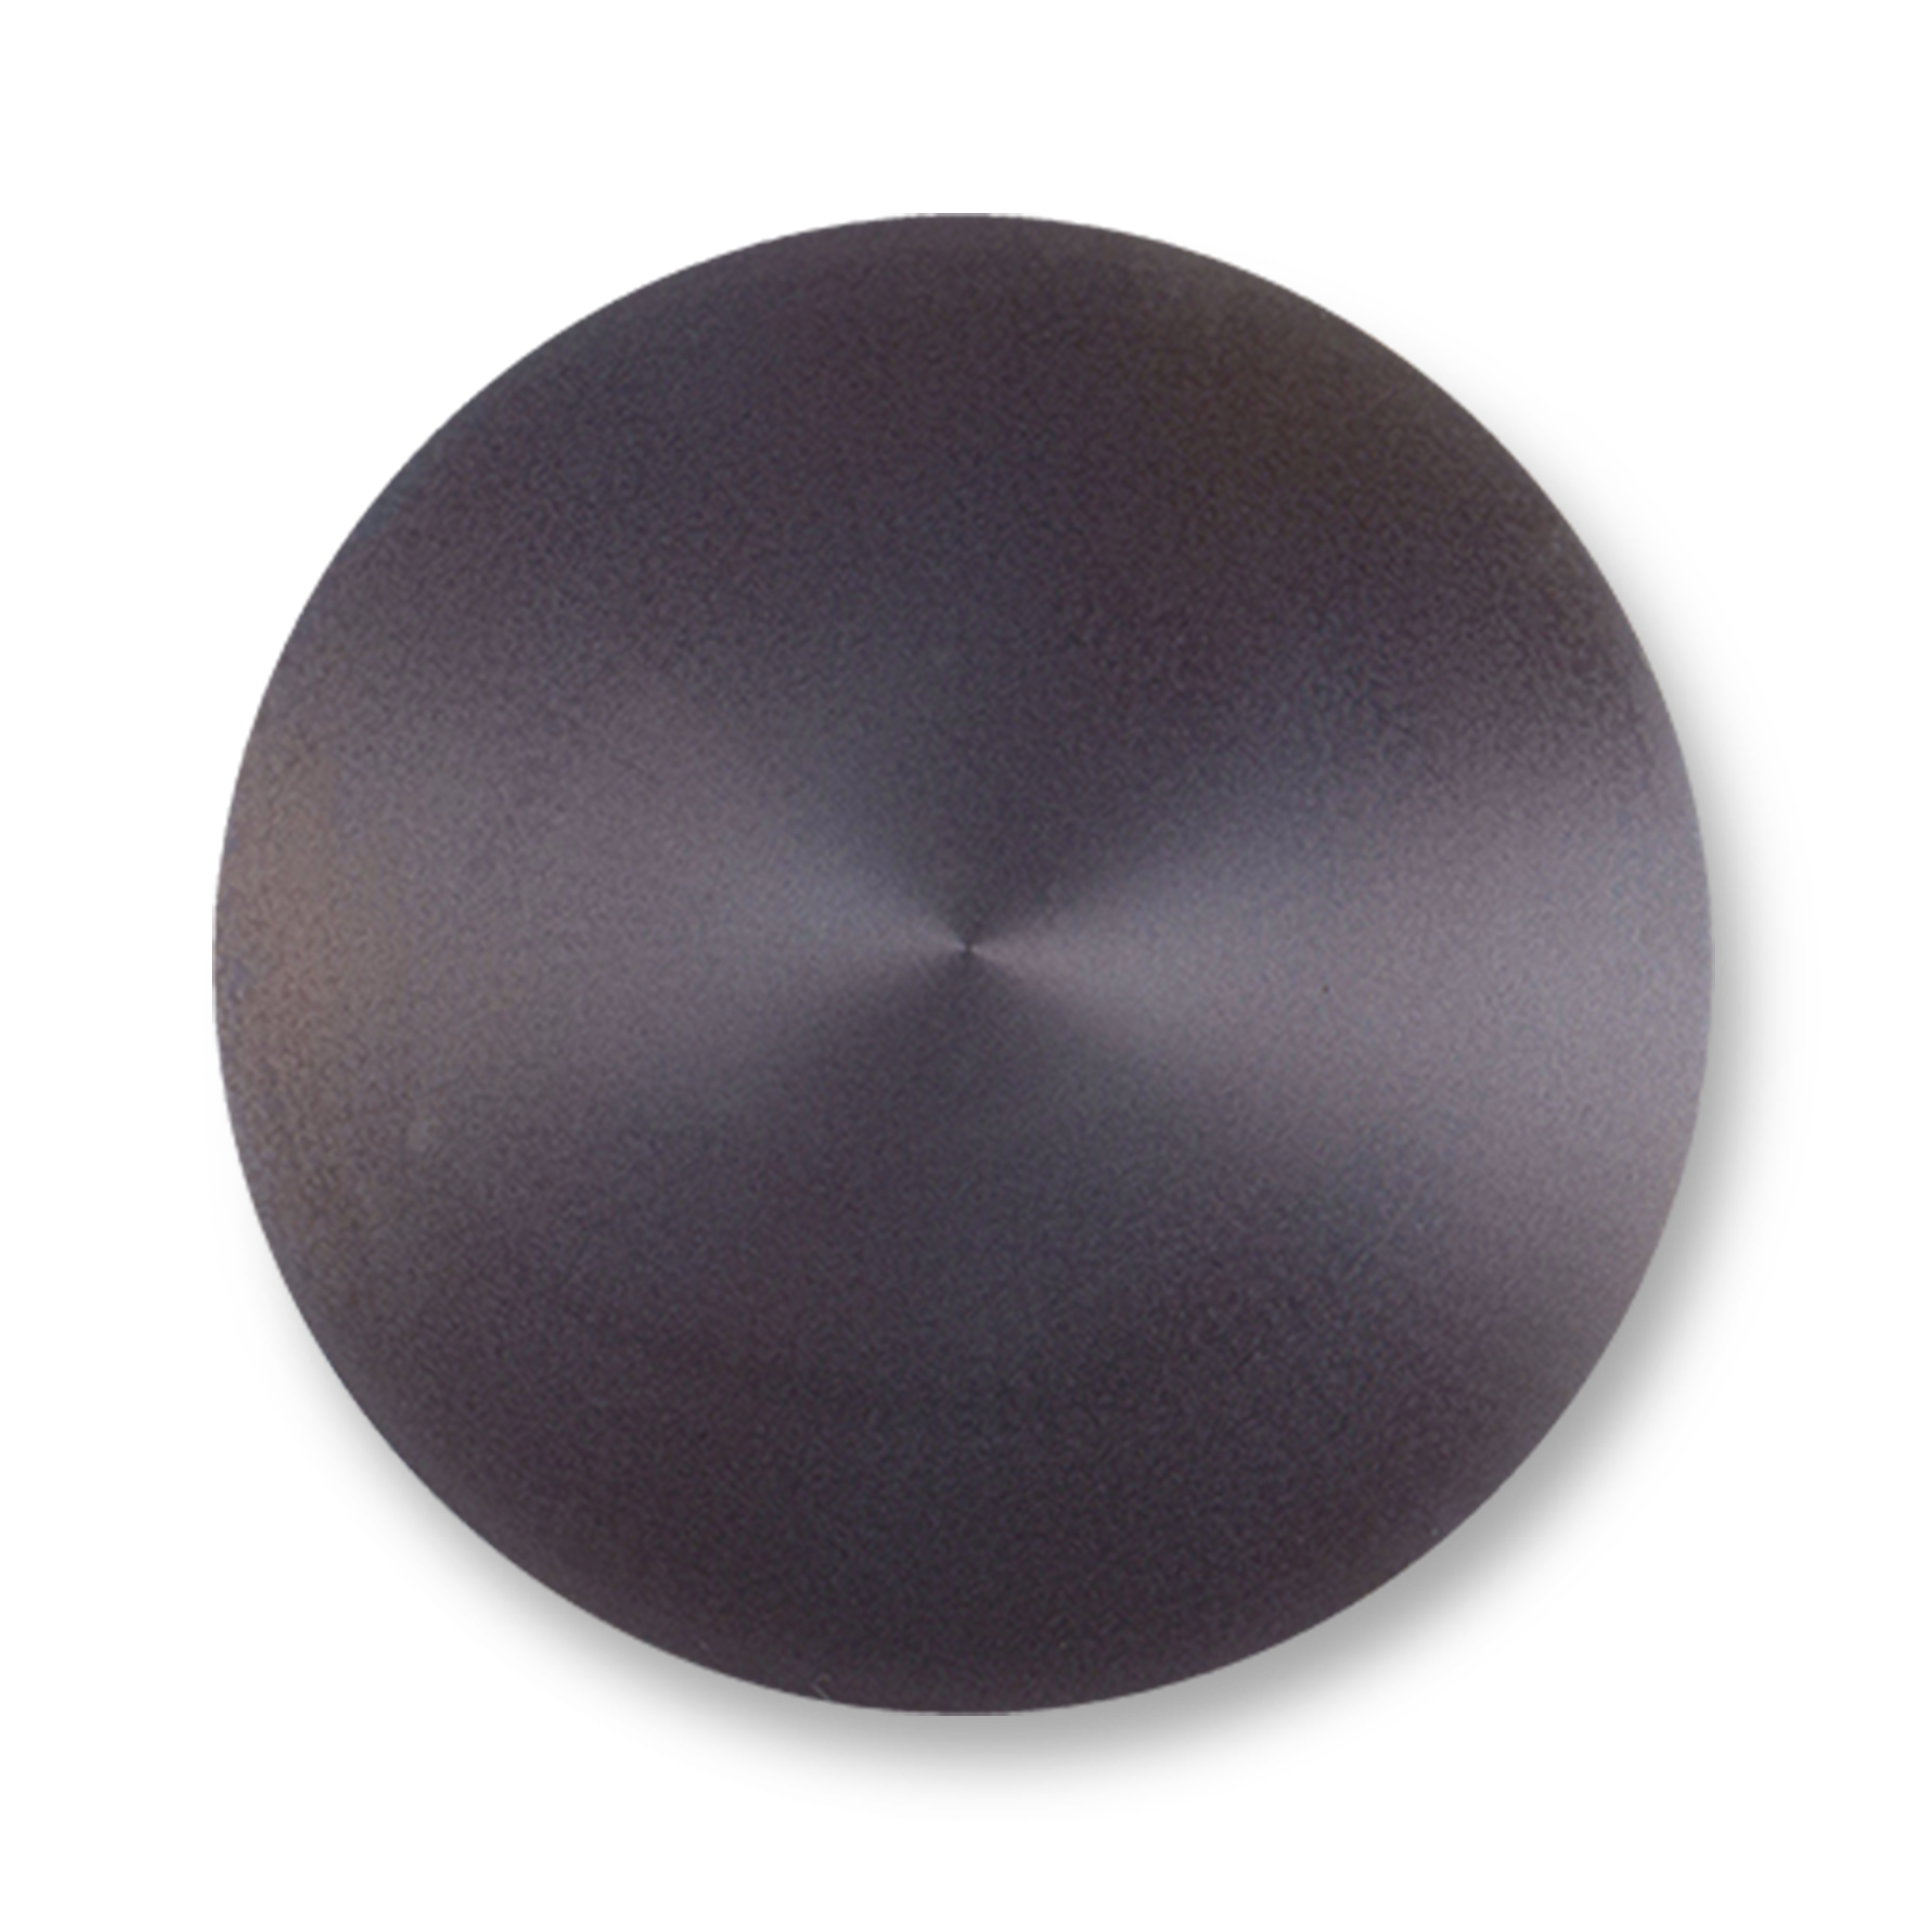 Crêpière Billig de Krampouz, 35 cm de diamètre en fonte